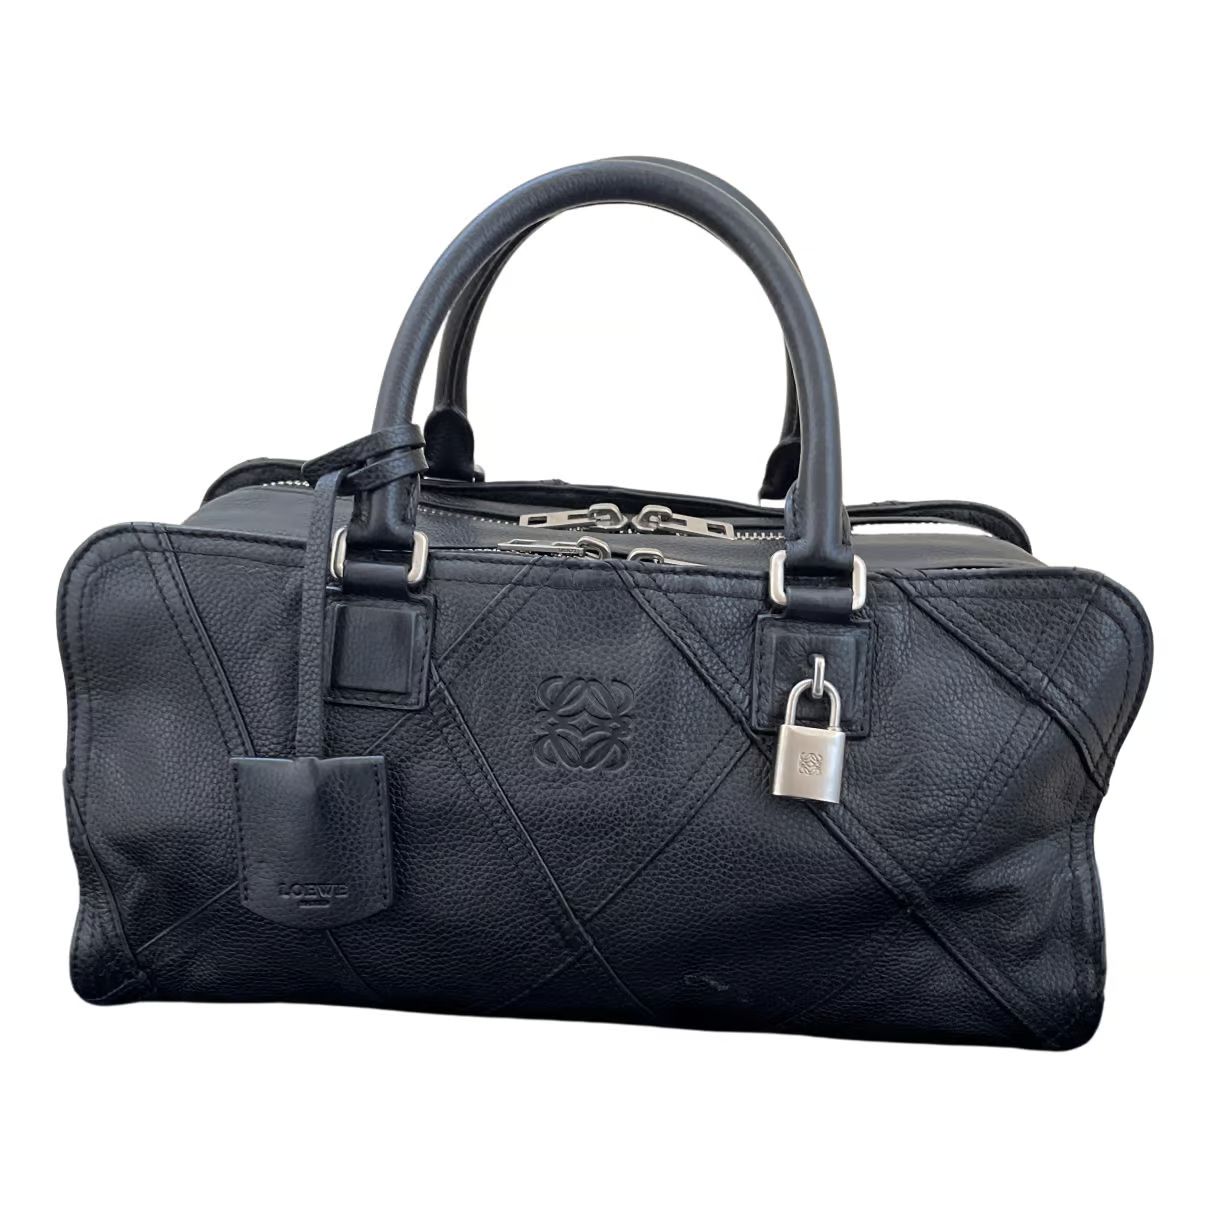 Amazona leather handbag Loewe Black in Leather - 29466700 | Vestiaire Collective (Global)